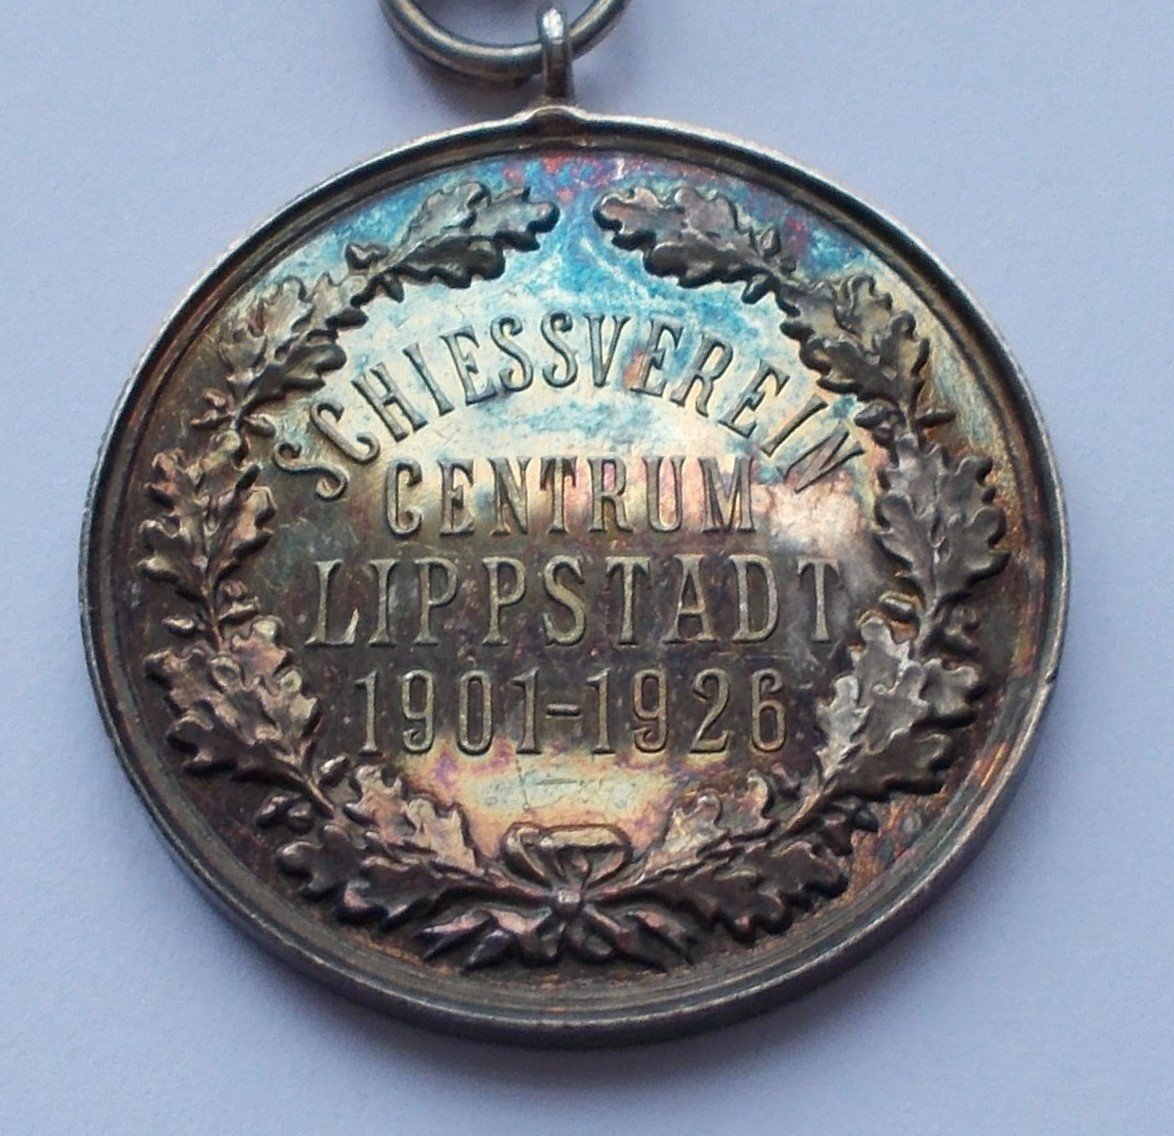 Medaille Lippstädter Schießverein Centrum 1926 (Stadtmuseum Lippstadt CC BY-NC-ND)